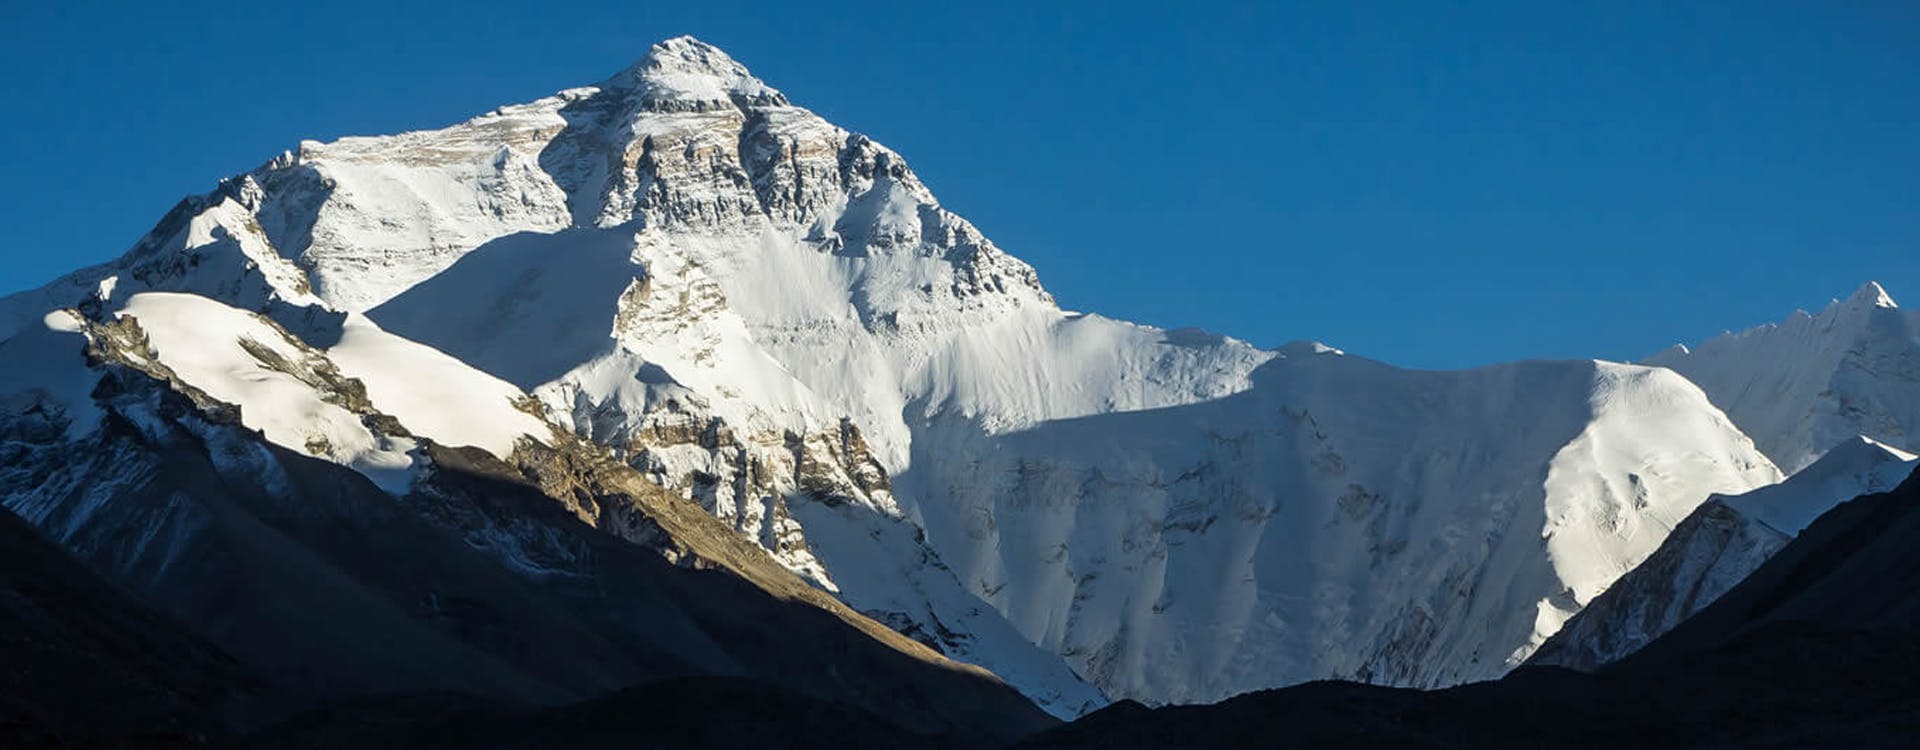 Tibet Everest Base Camp Tour